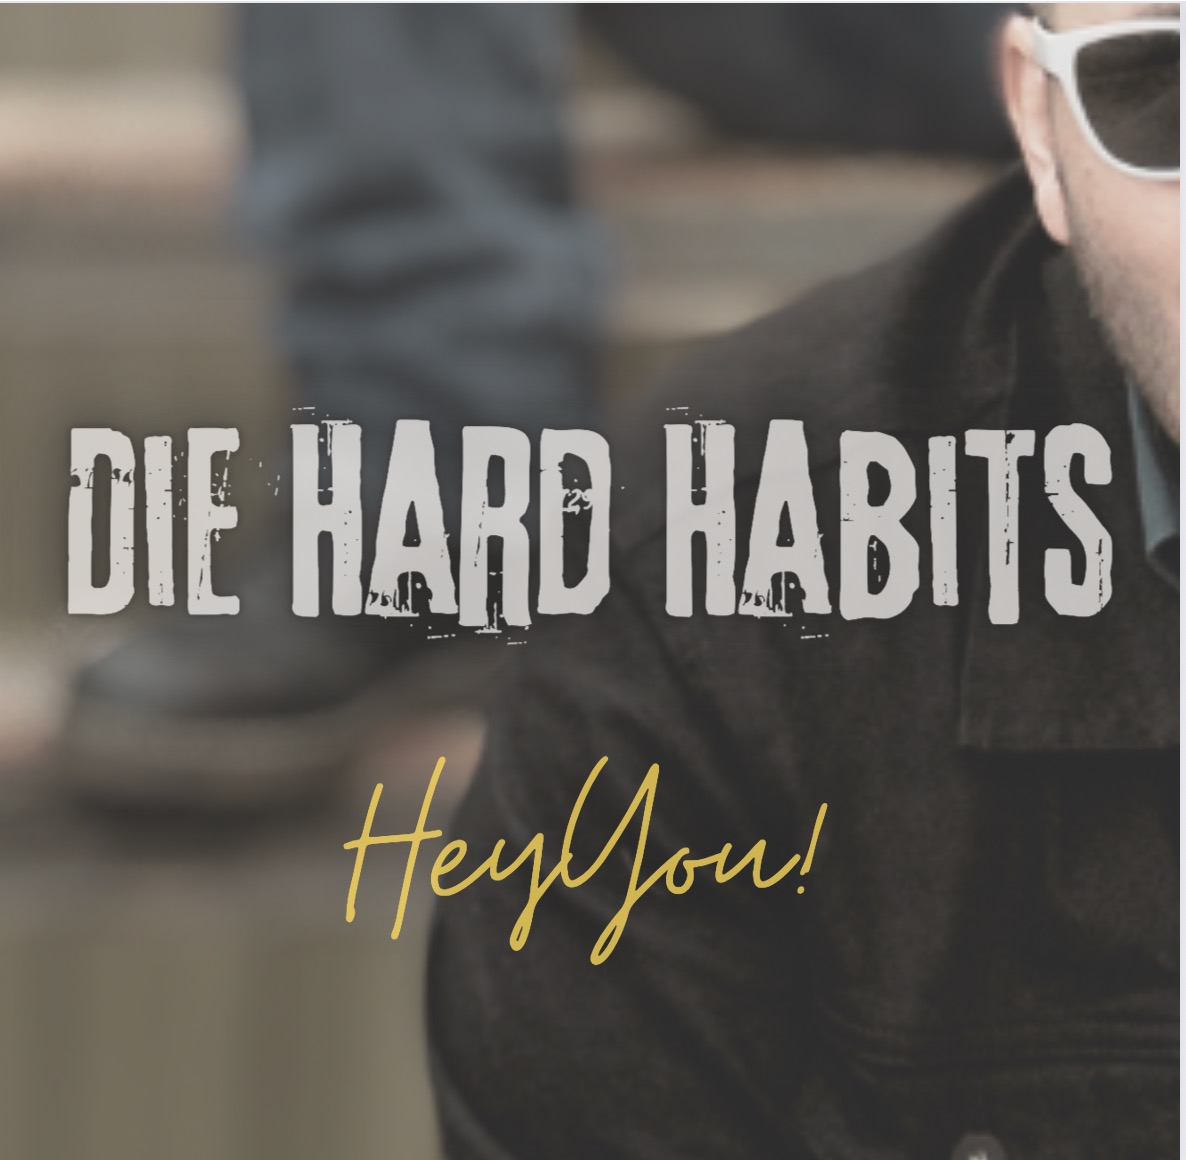 Die Hard Habits – Hey You!